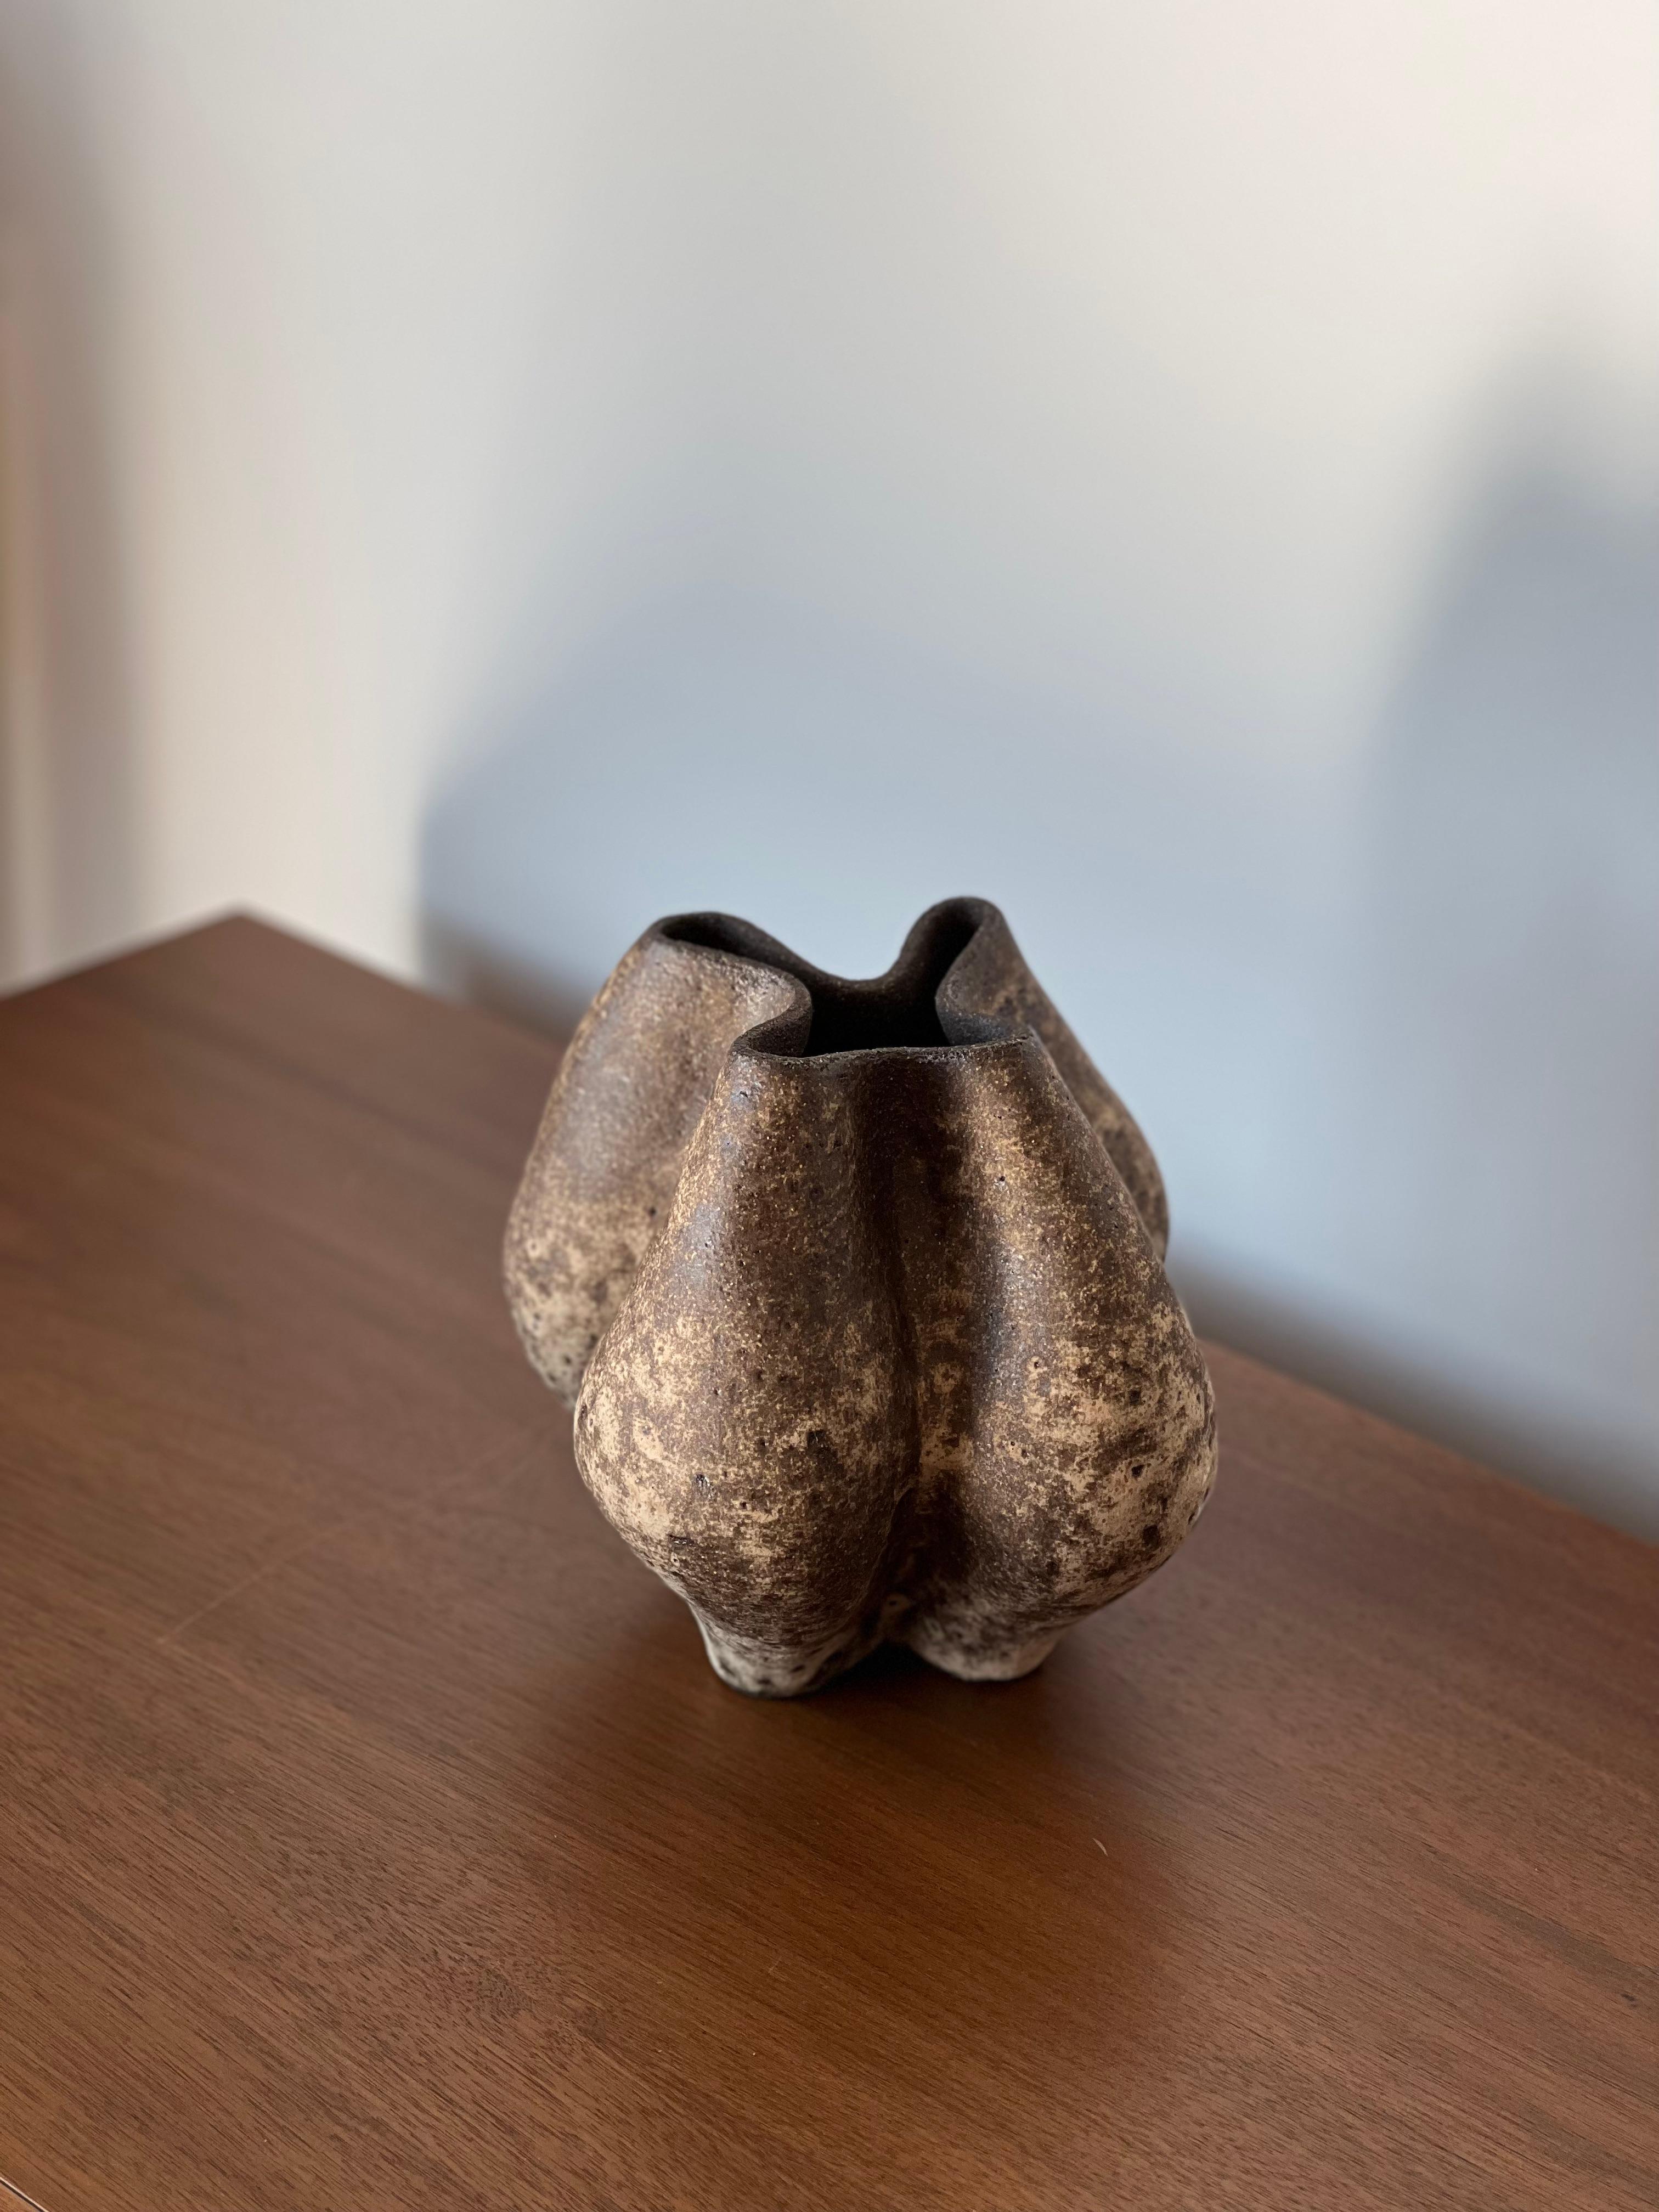 Anatolische 5-Vase von Güler Elçi
Abmessungen: B 20,3 x T 20,3 x H 21,5 cm.
MATERIALIEN: Steingut Keramik.

Güler Elçi ist eine in Istanbul ansässige Keramikkünstlerin. Vor dem Hintergrund ihrer Karriere als Ingenieurin betrachtet sie Keramik als